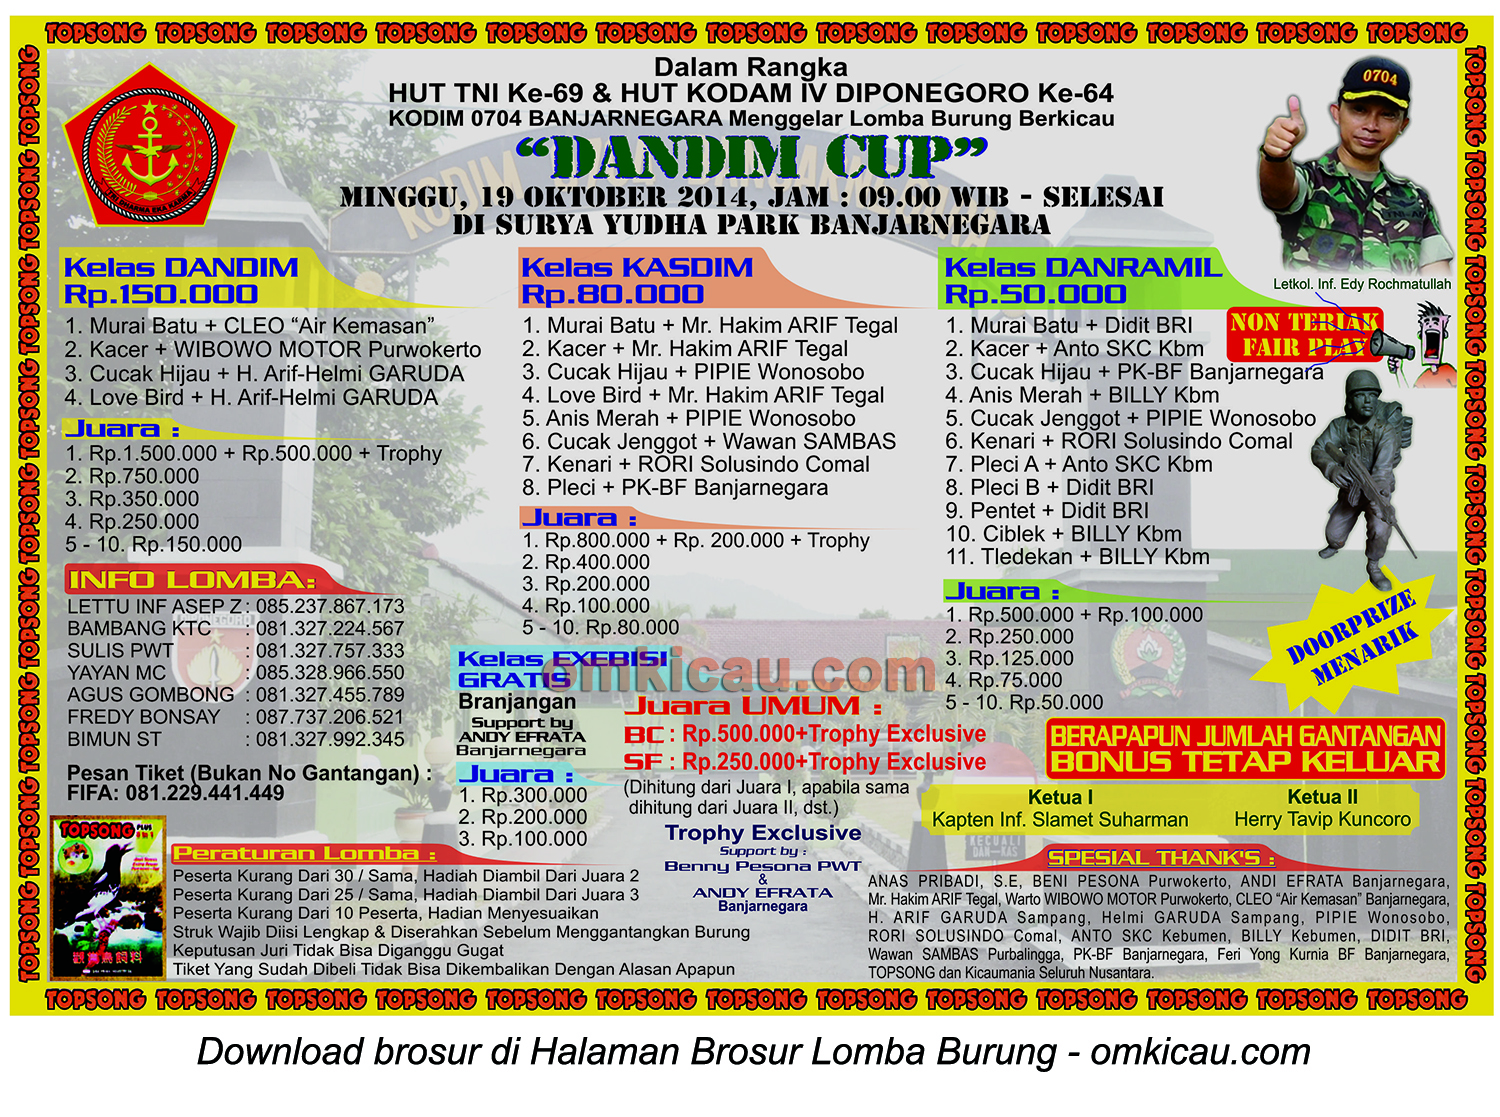 Brosur Lomba Burung Berkicau Dandim Cup, Banjarnegara, 19 Oktober 2014